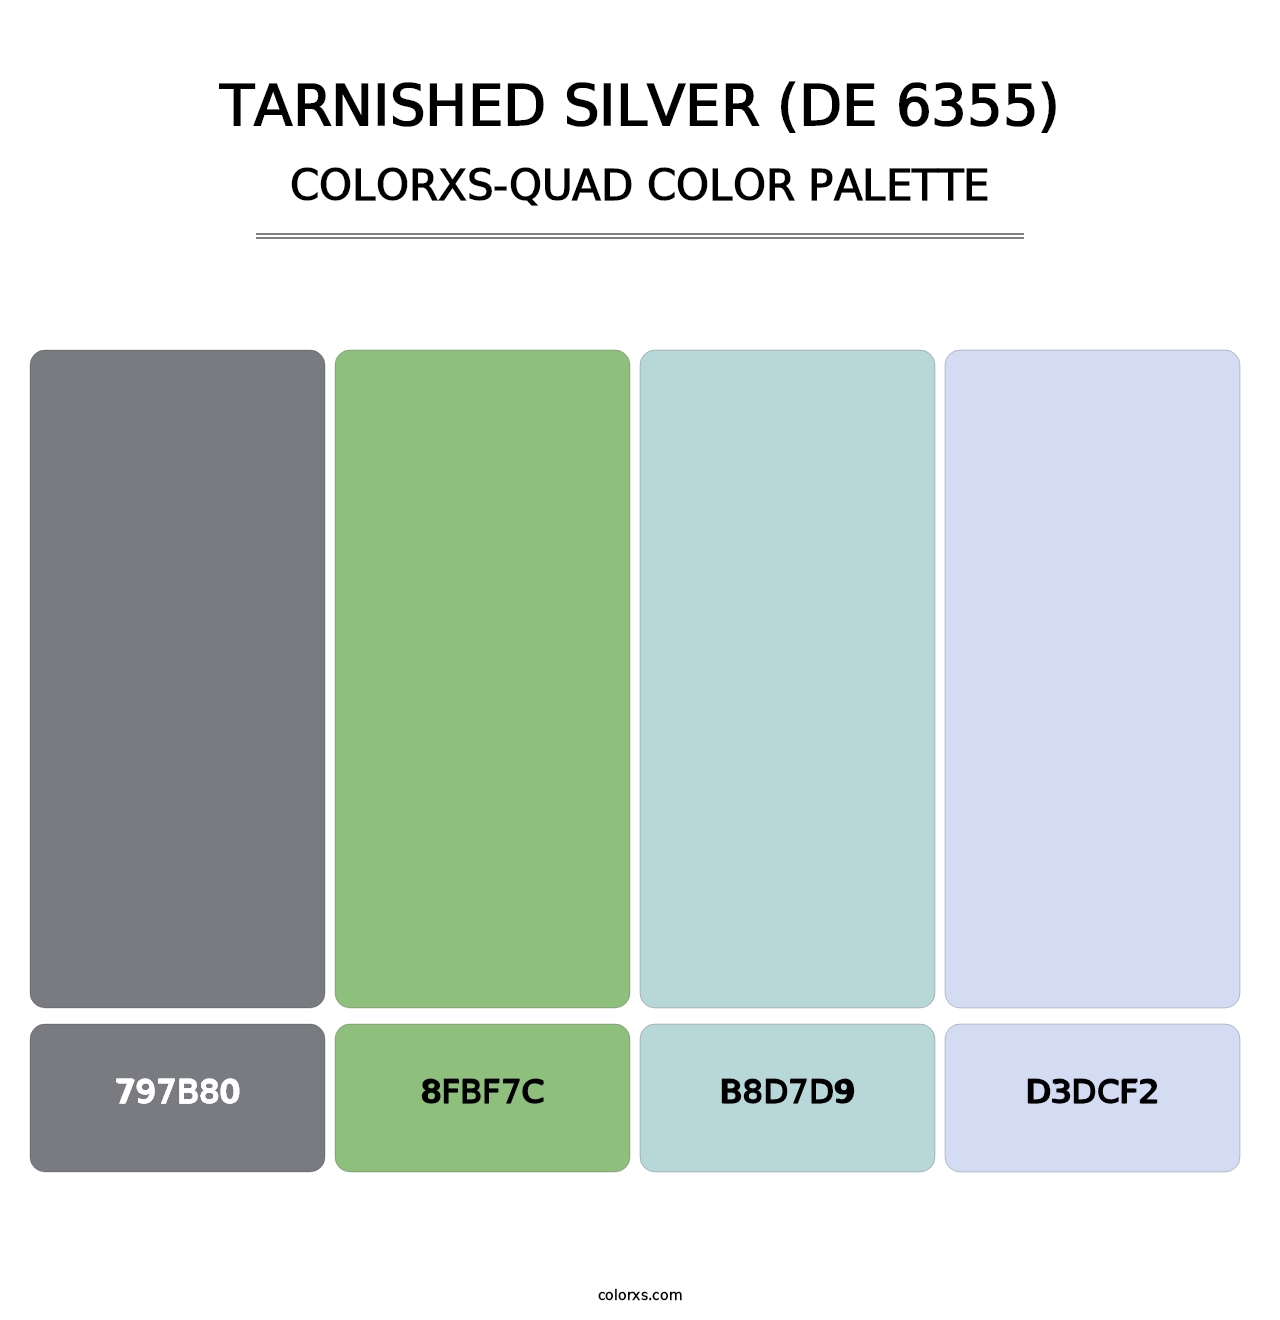 Tarnished Silver (DE 6355) - Colorxs Quad Palette